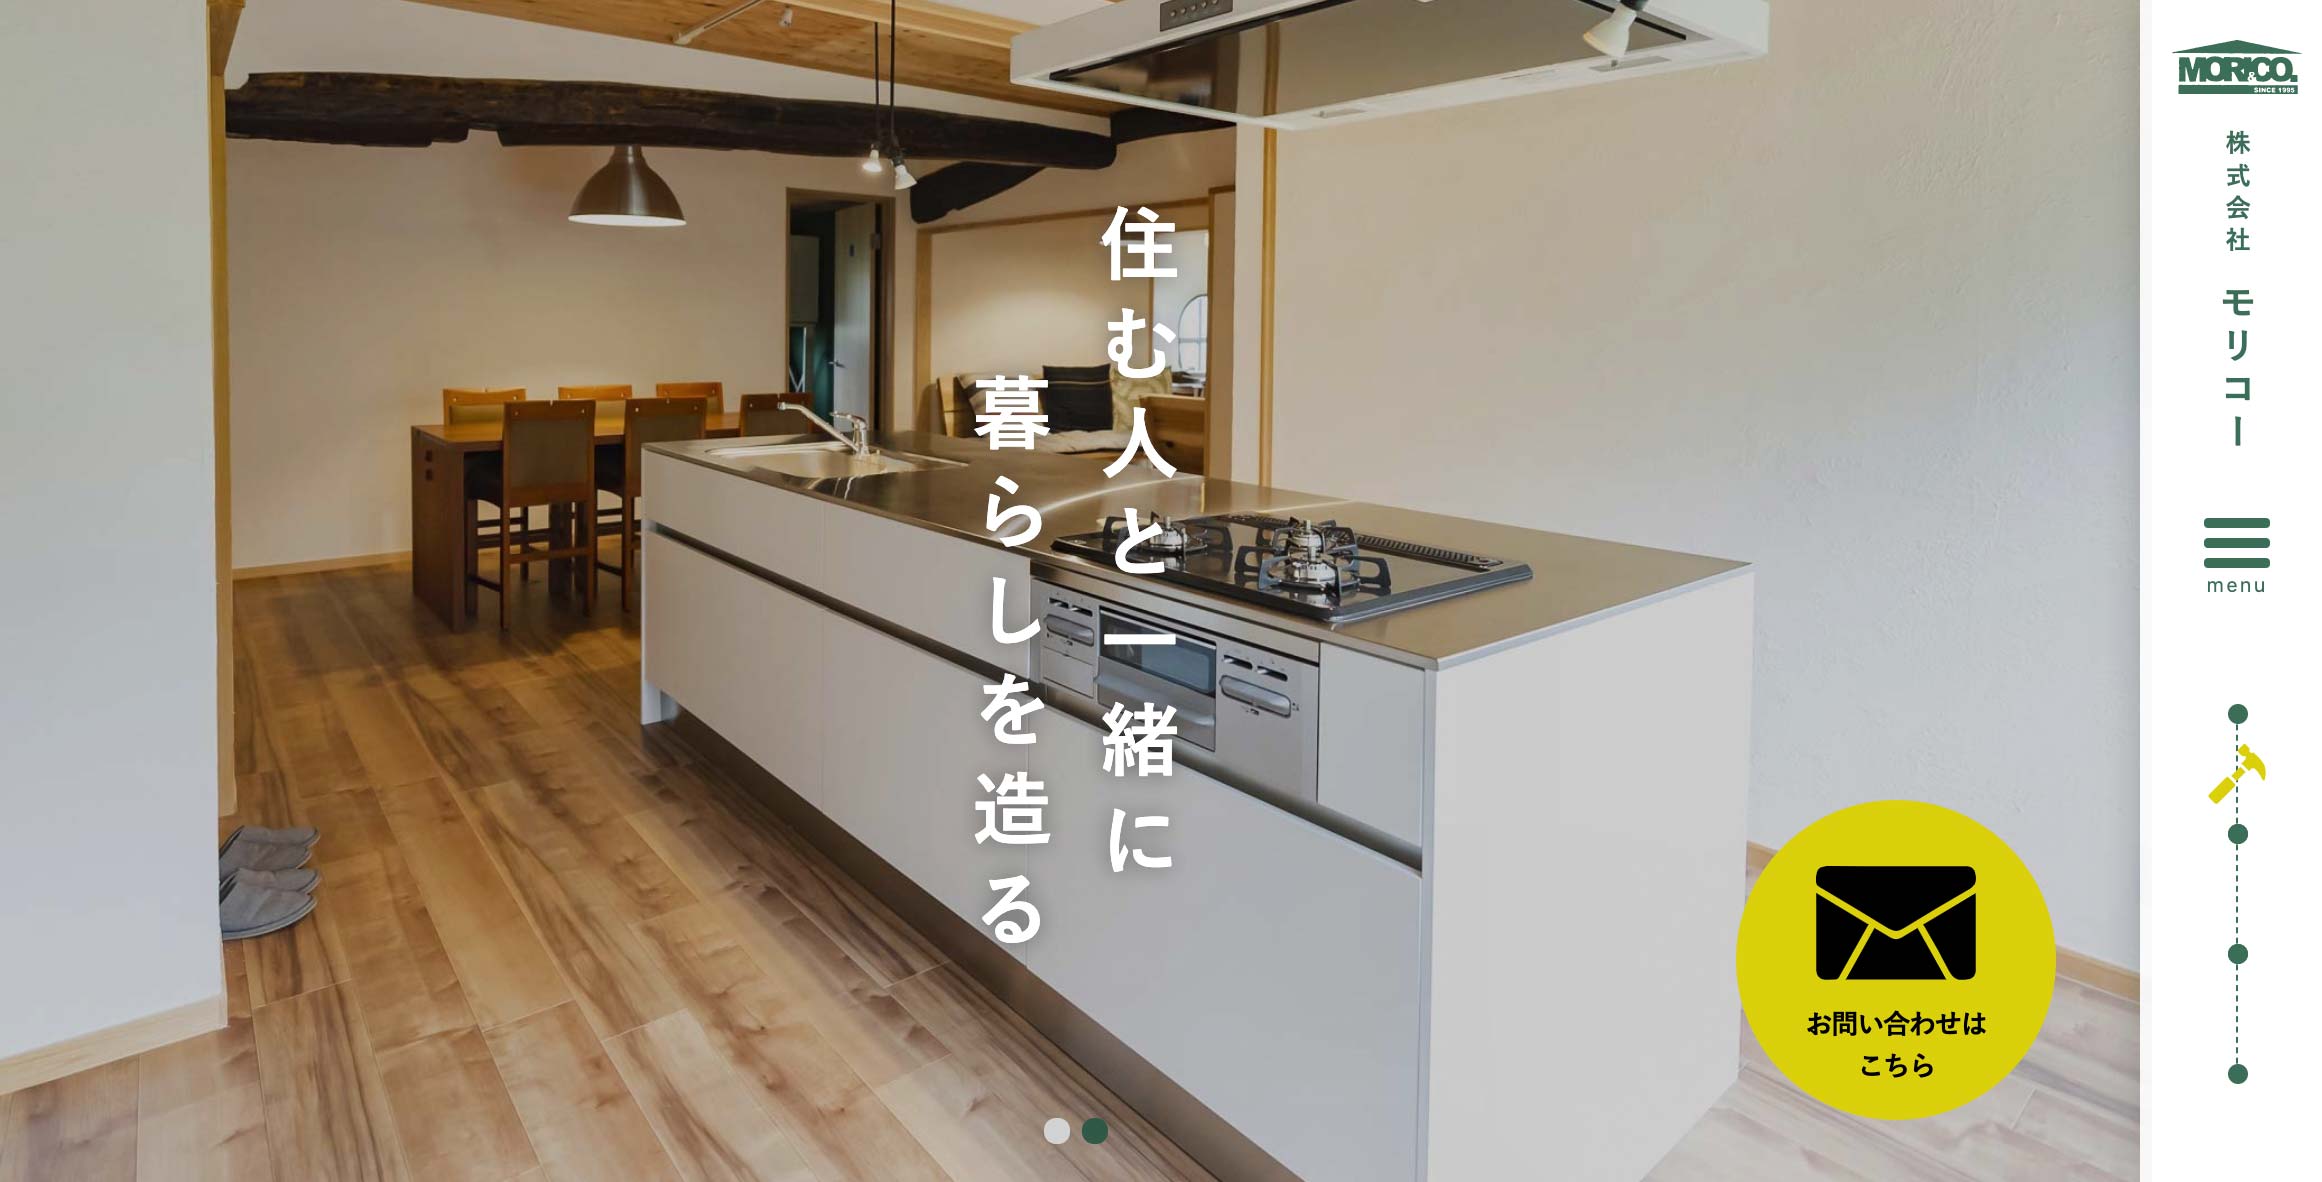 リニューアルした部屋とキッチンをメイン画像にした株式会社モリコー のホームページ。スライダーの上にはお問い合わせボタンがあり、ページの右側にはサイドバーメニューが配置されています。